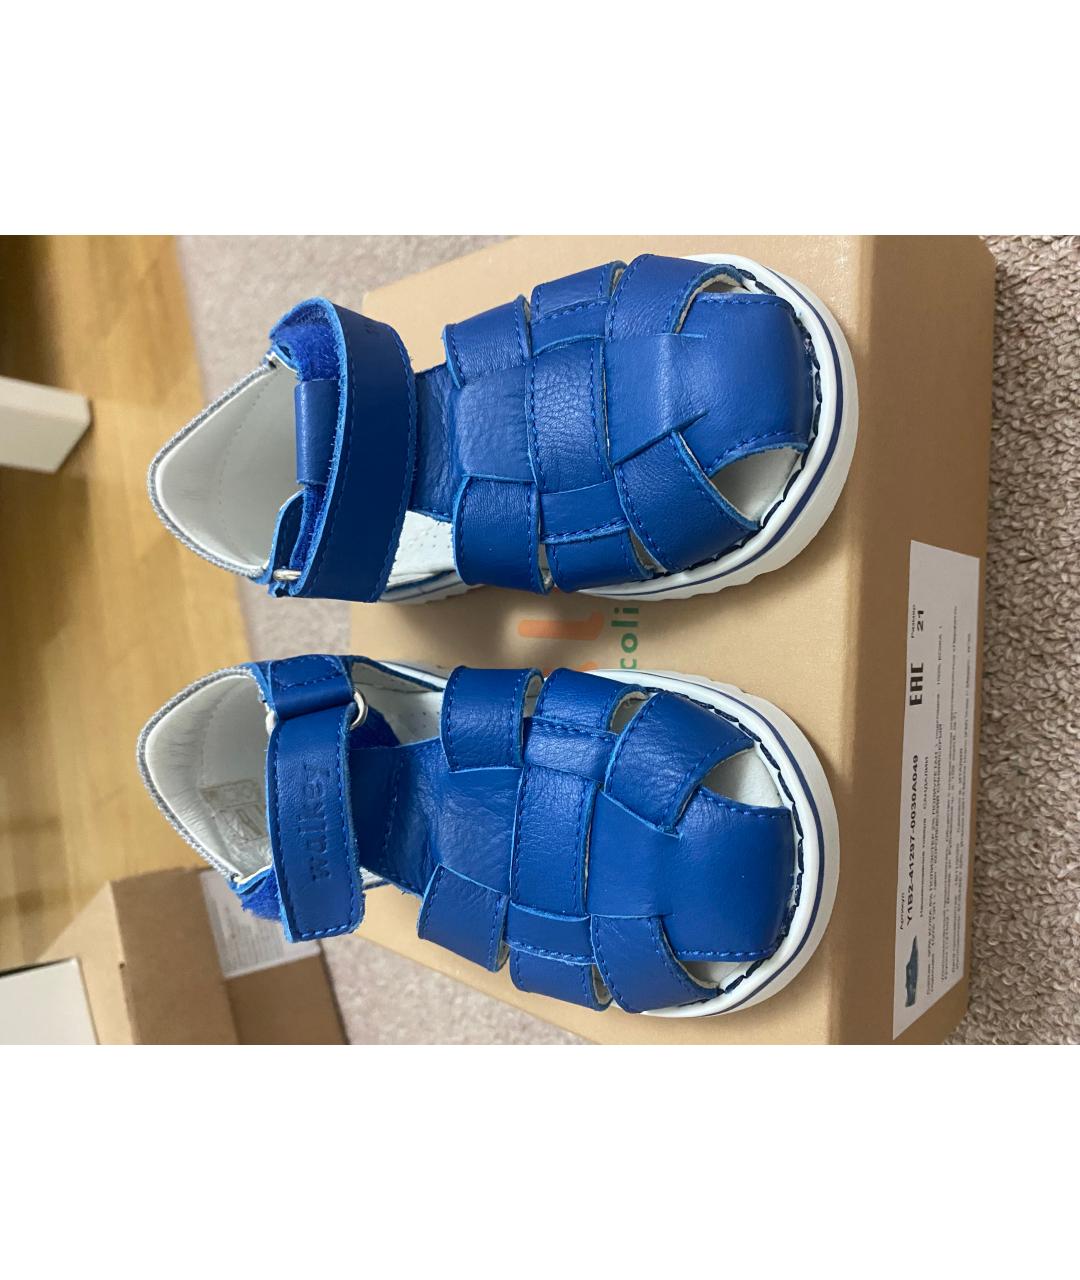 WALKEY Синие кожаные сандалии и шлепанцы, фото 2